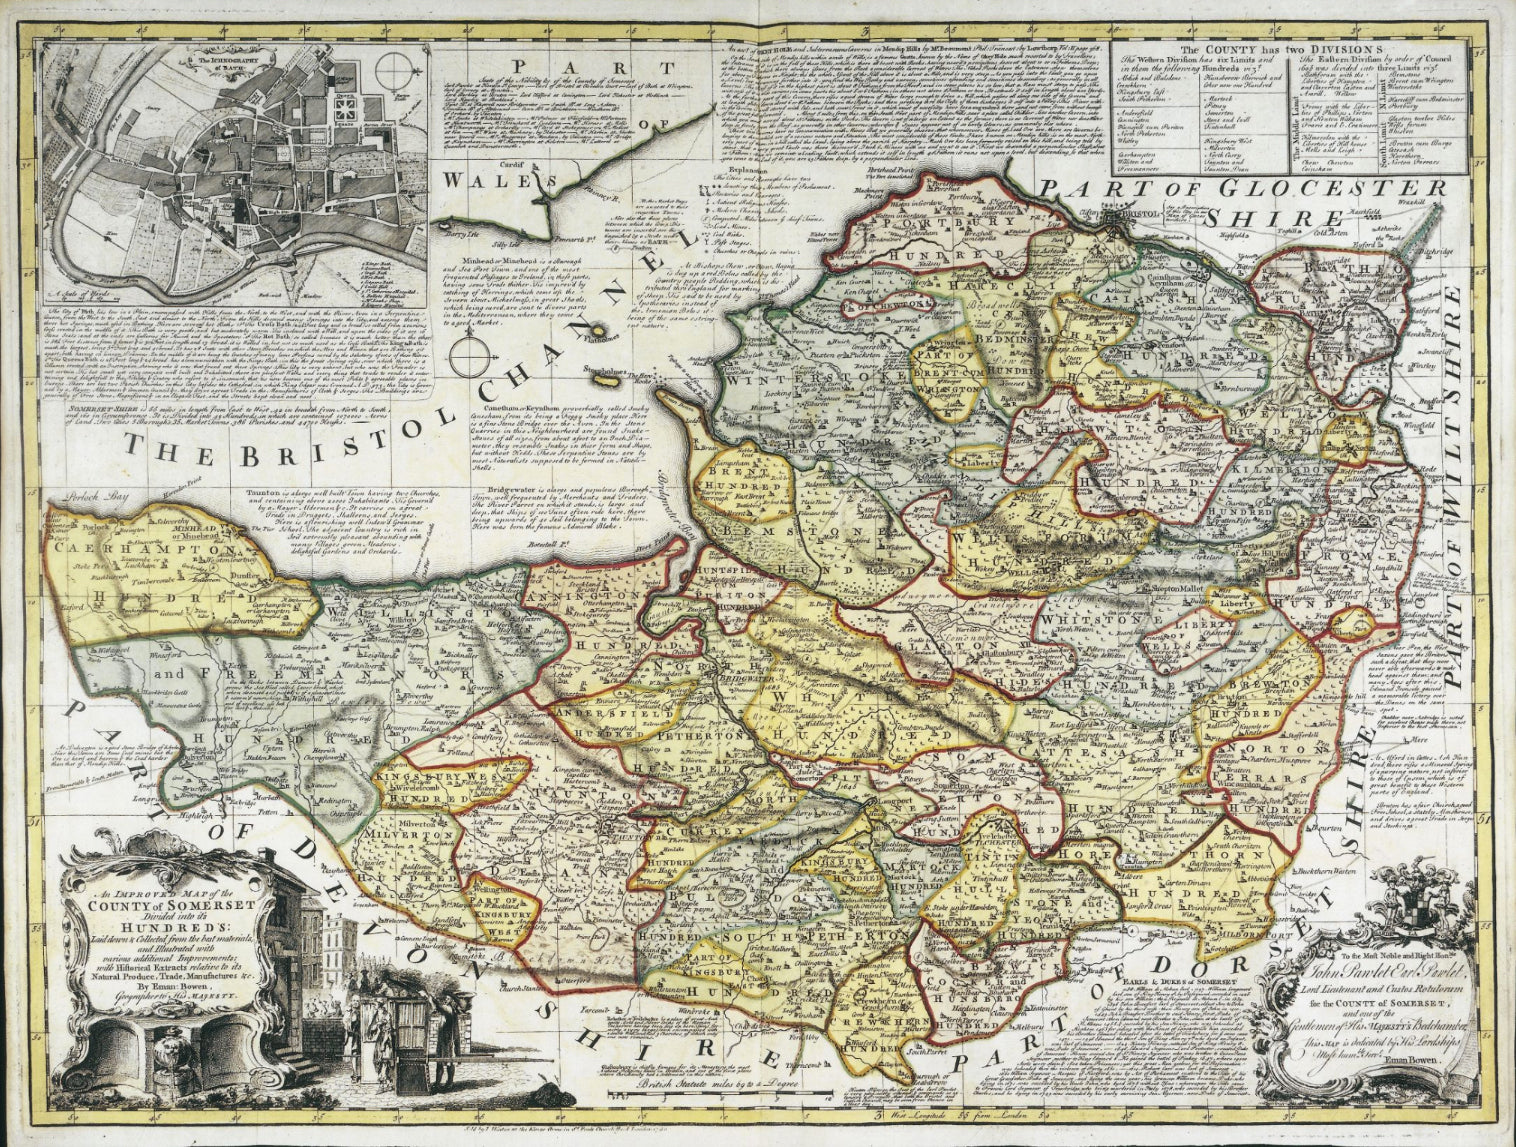 Emmanuel Bowen 1740 An improved map of somerset